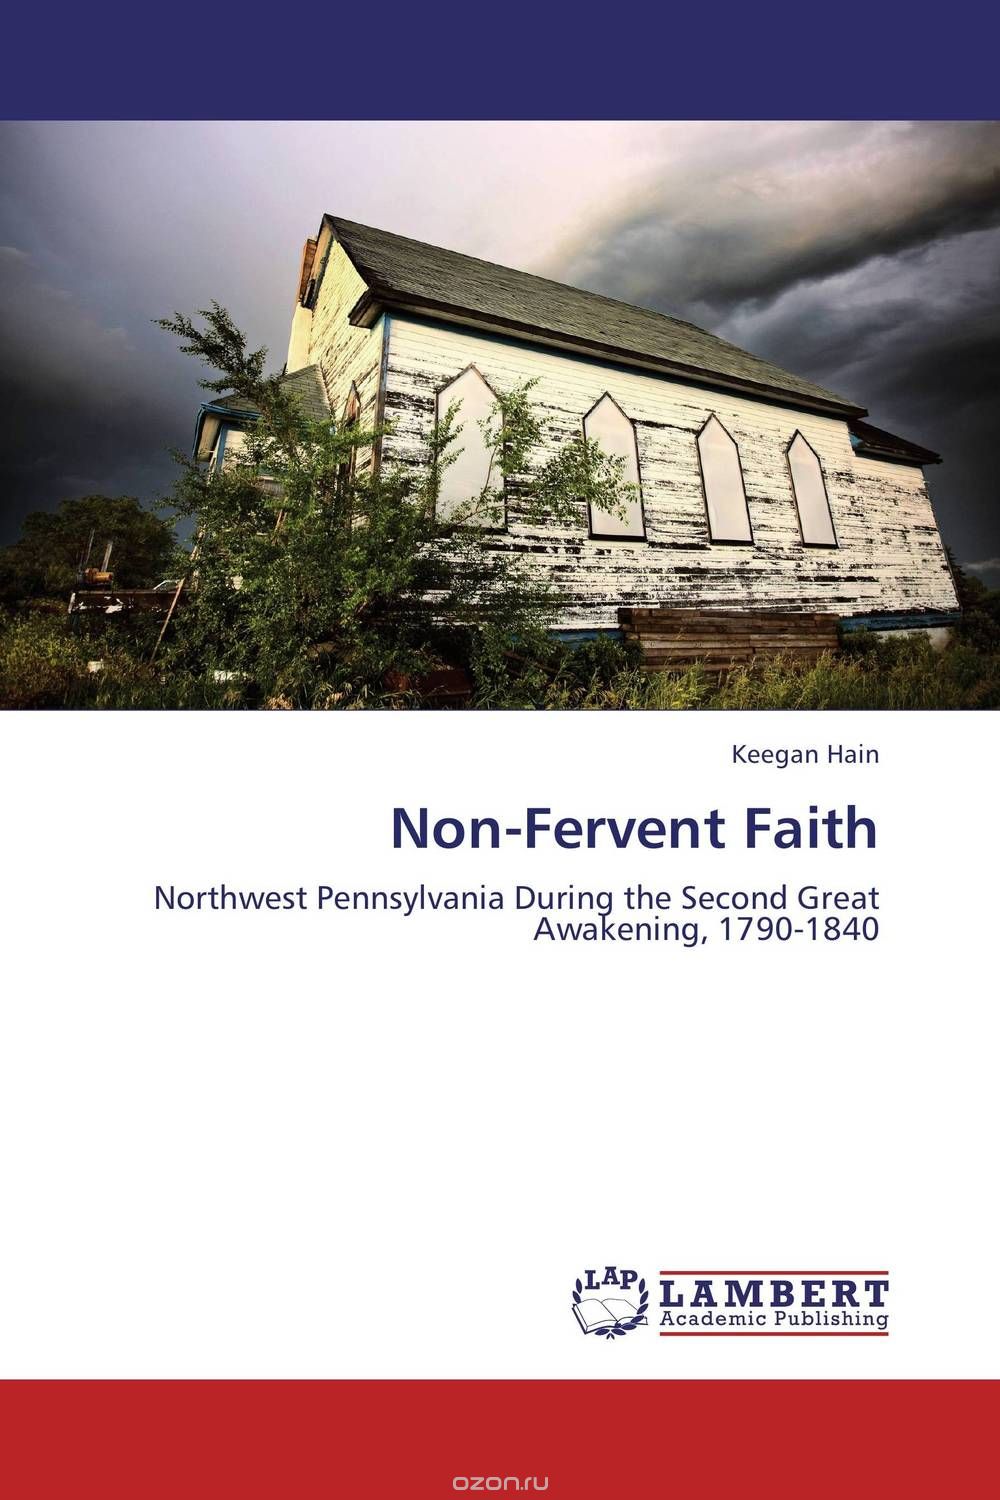 Скачать книгу "Non-Fervent Faith"